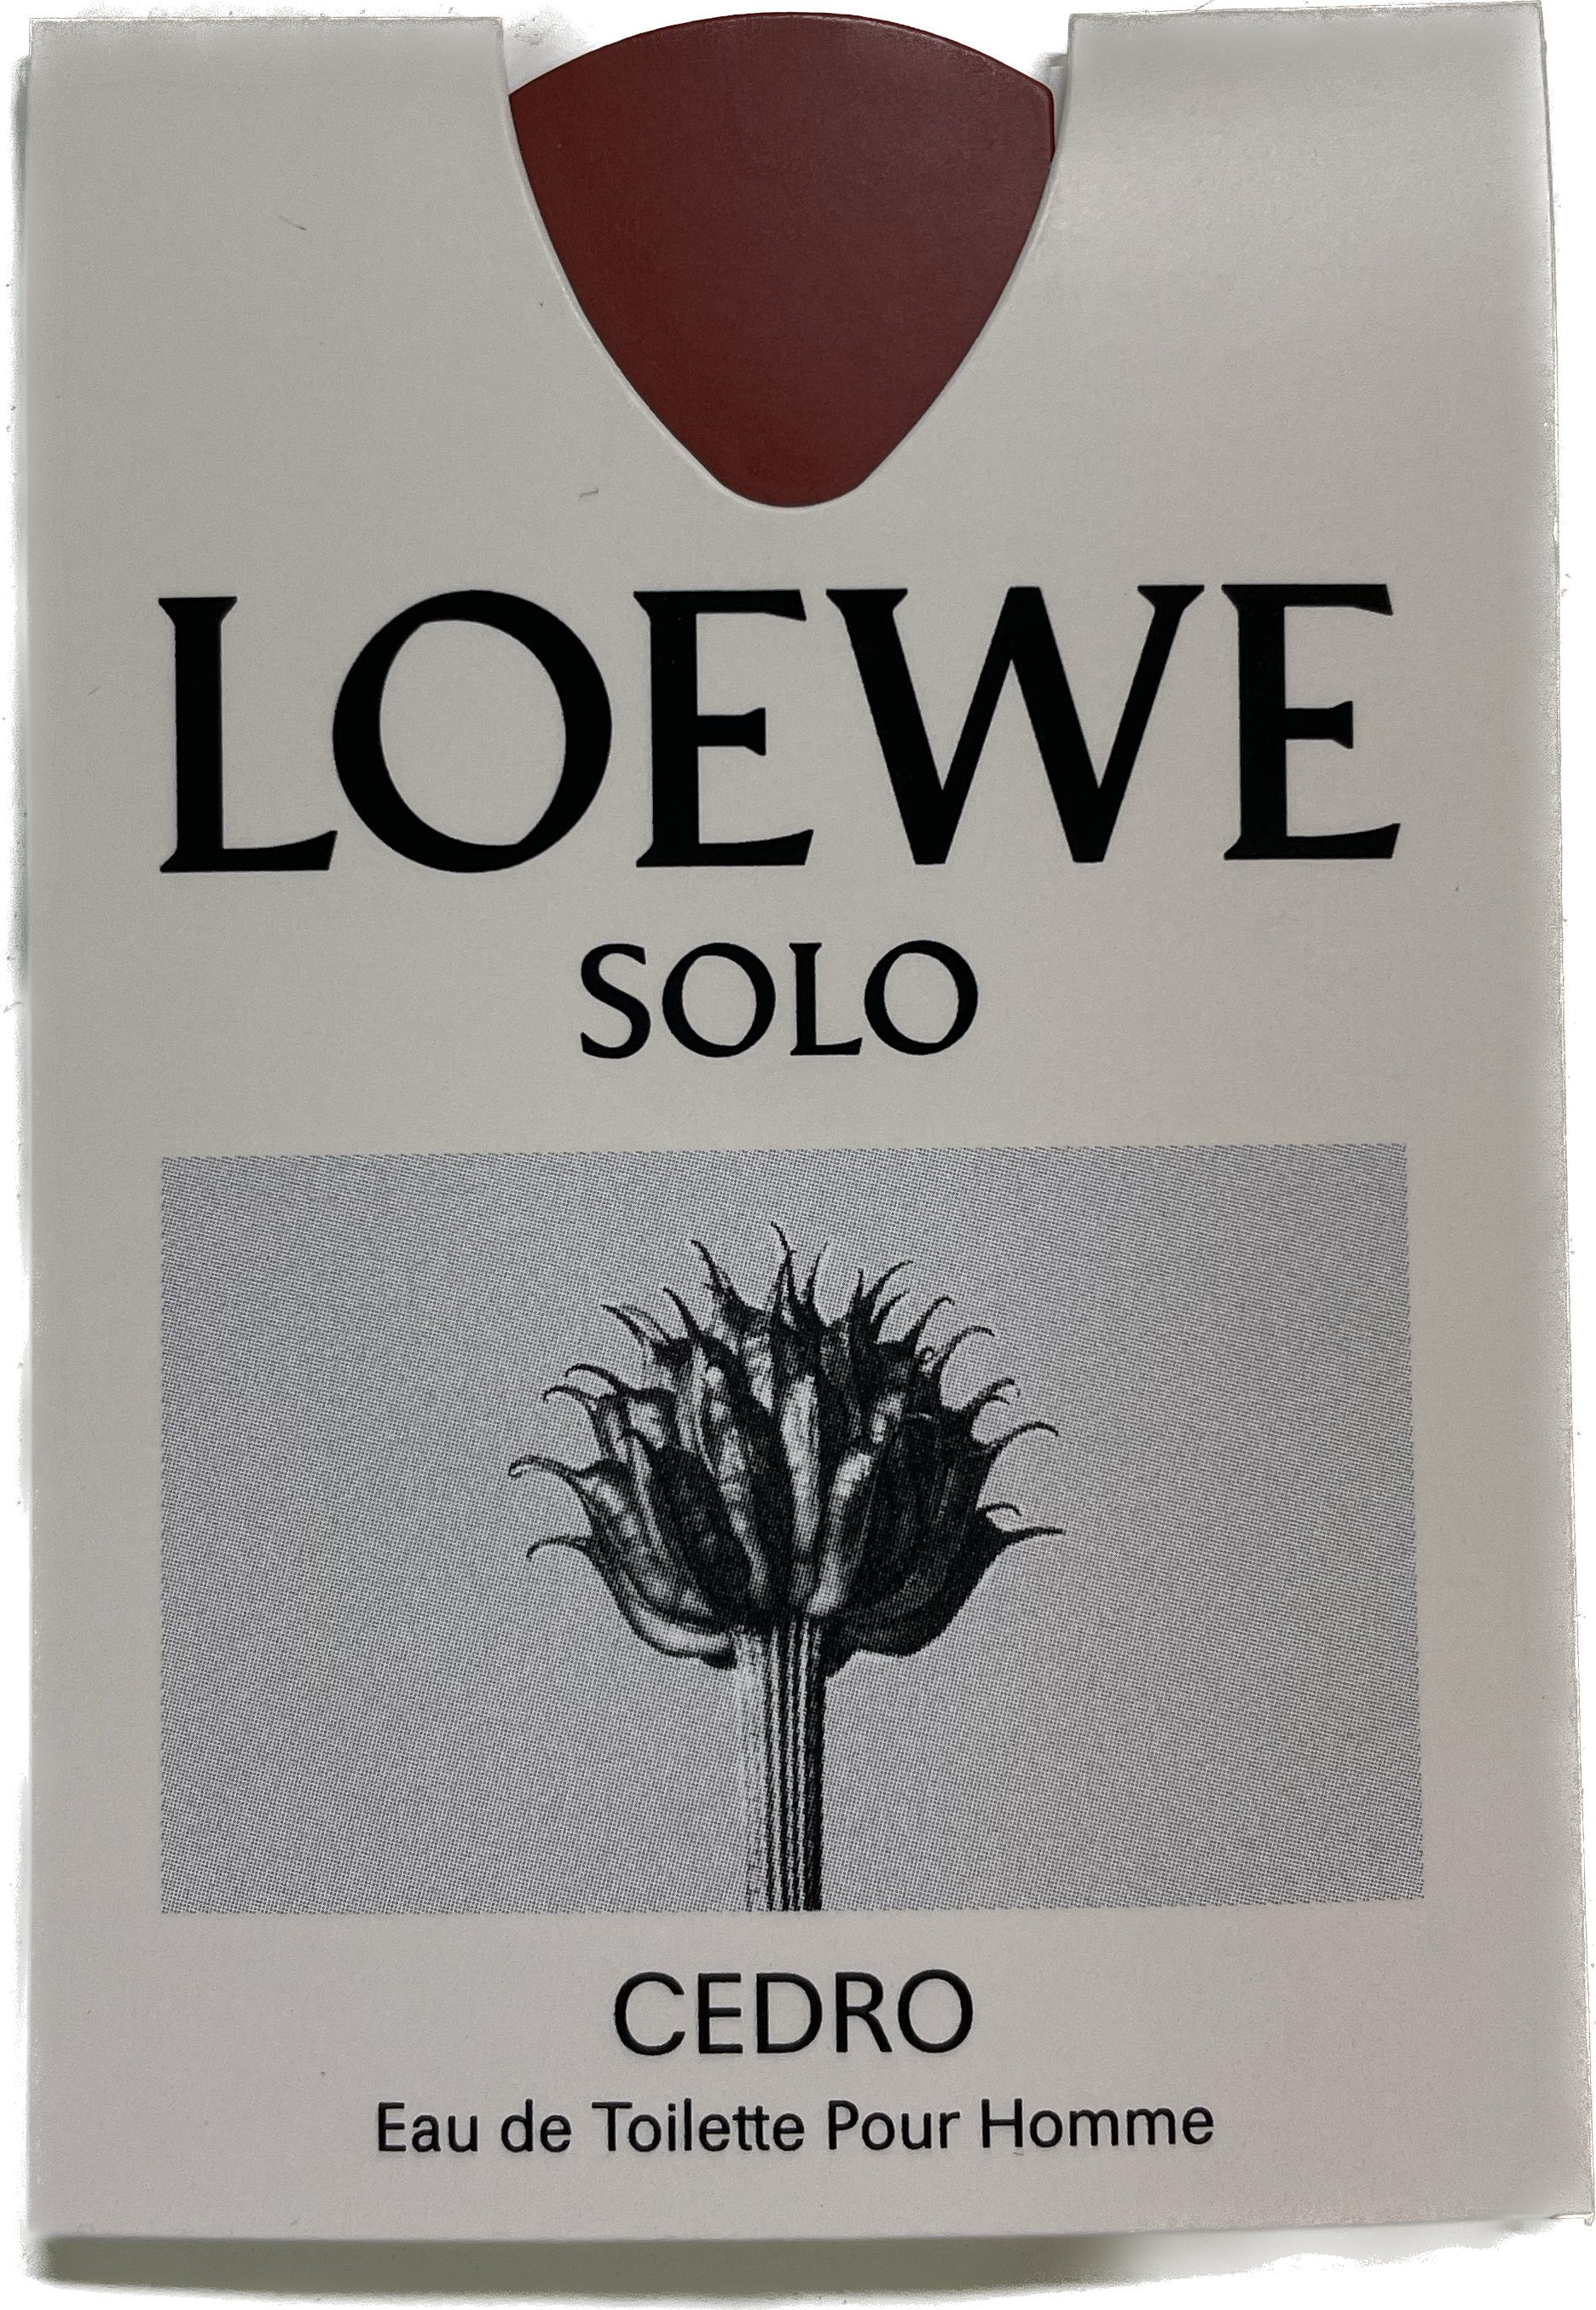 Loewe Solo Cedro, EDT - Vial 0,3ml